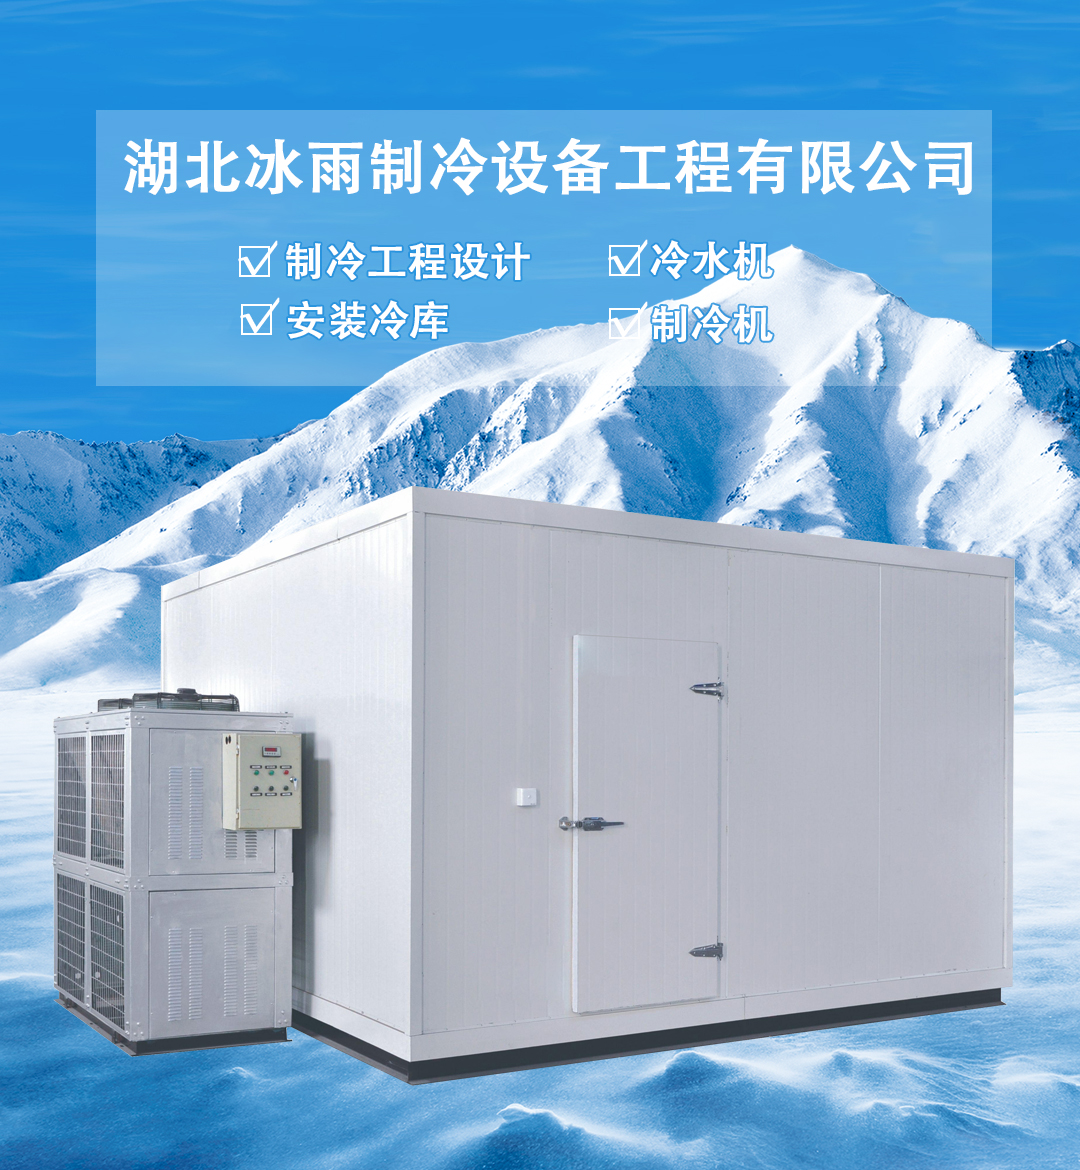 在选择制冷剂时候,应该结合襄阳冷冻库的不同的用途